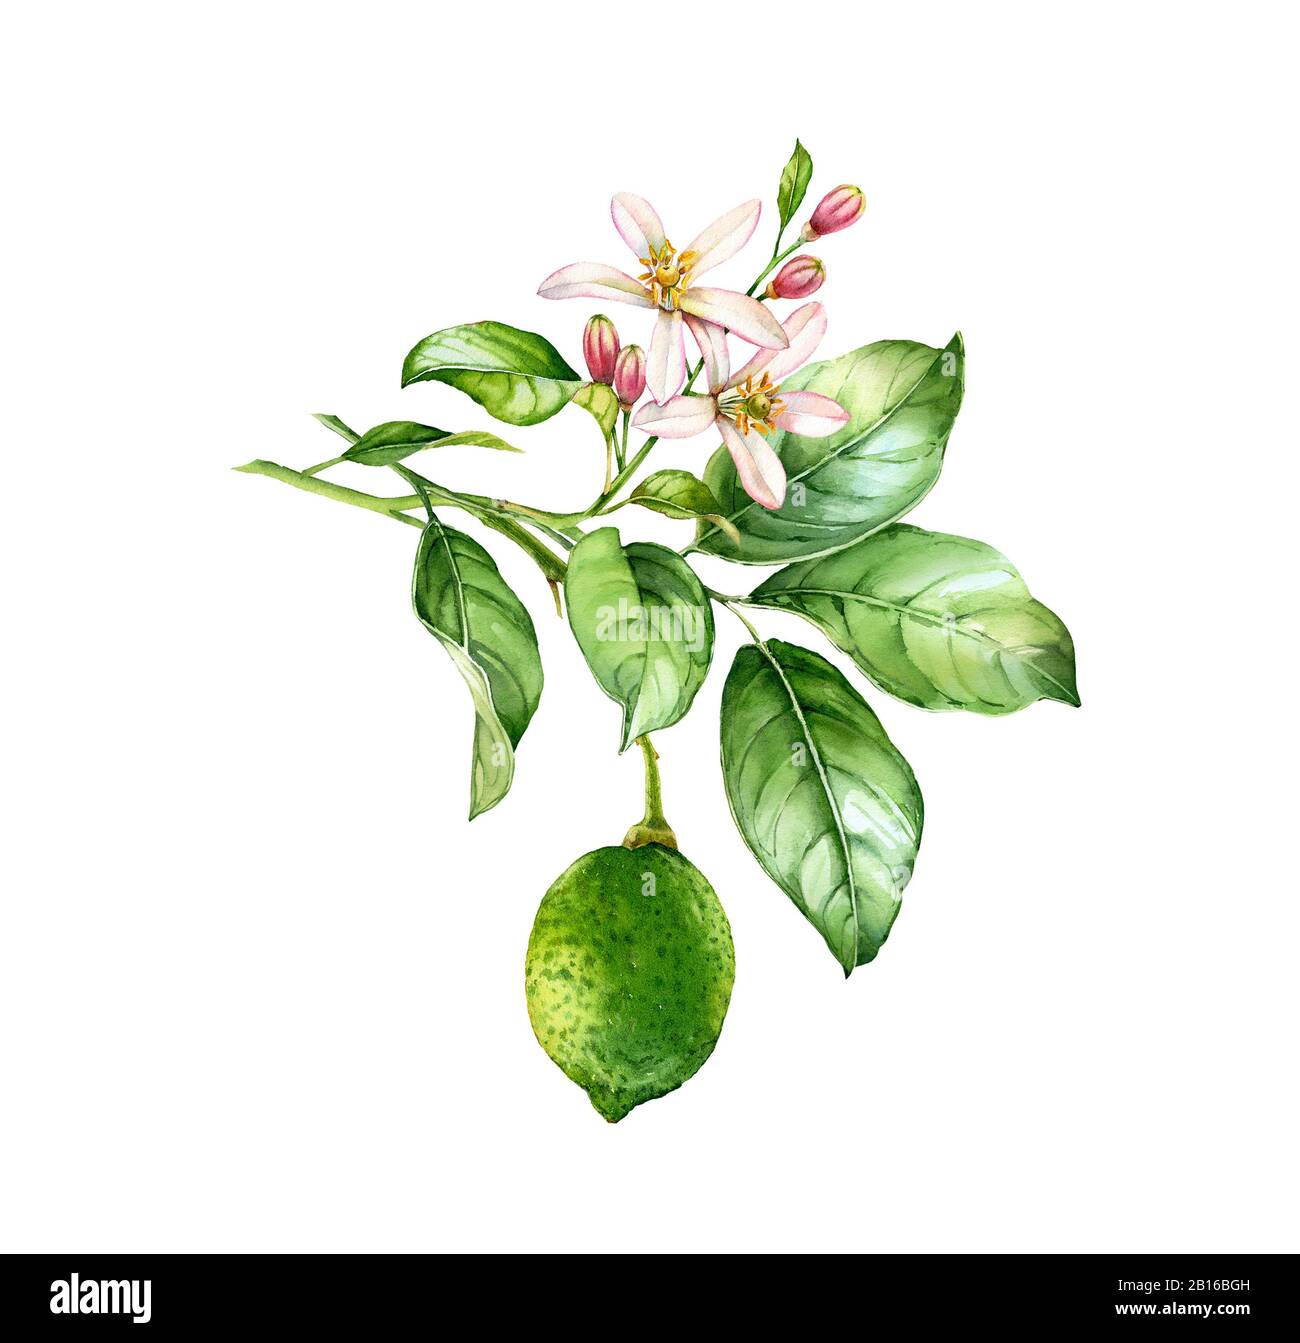 Wasserfarben-Lime-Verzweigung. Realistische Zitruspflanze mit Limetten, Blumen, Blättern. Botanische Illustration. Isoliertes Bildmaterial auf weiß. Handbemalt frisch Stockfoto